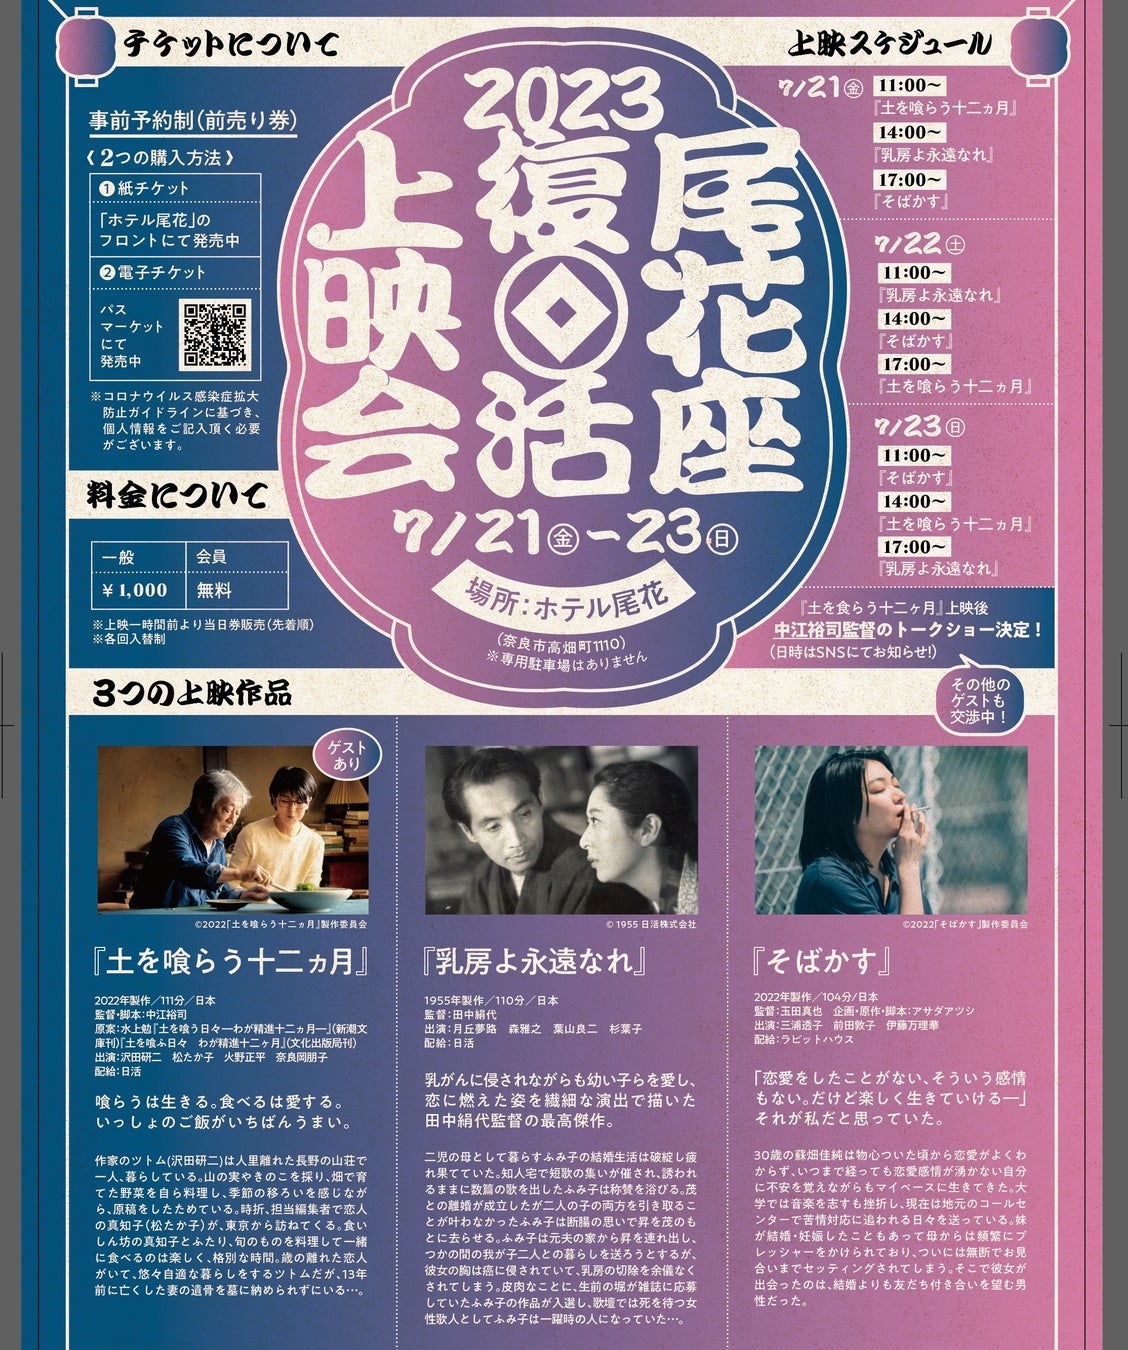 かつて奈良後で愛された映画館尾花座が期間限定復活「尾花座復活上映会」７月２１日より３日間開催